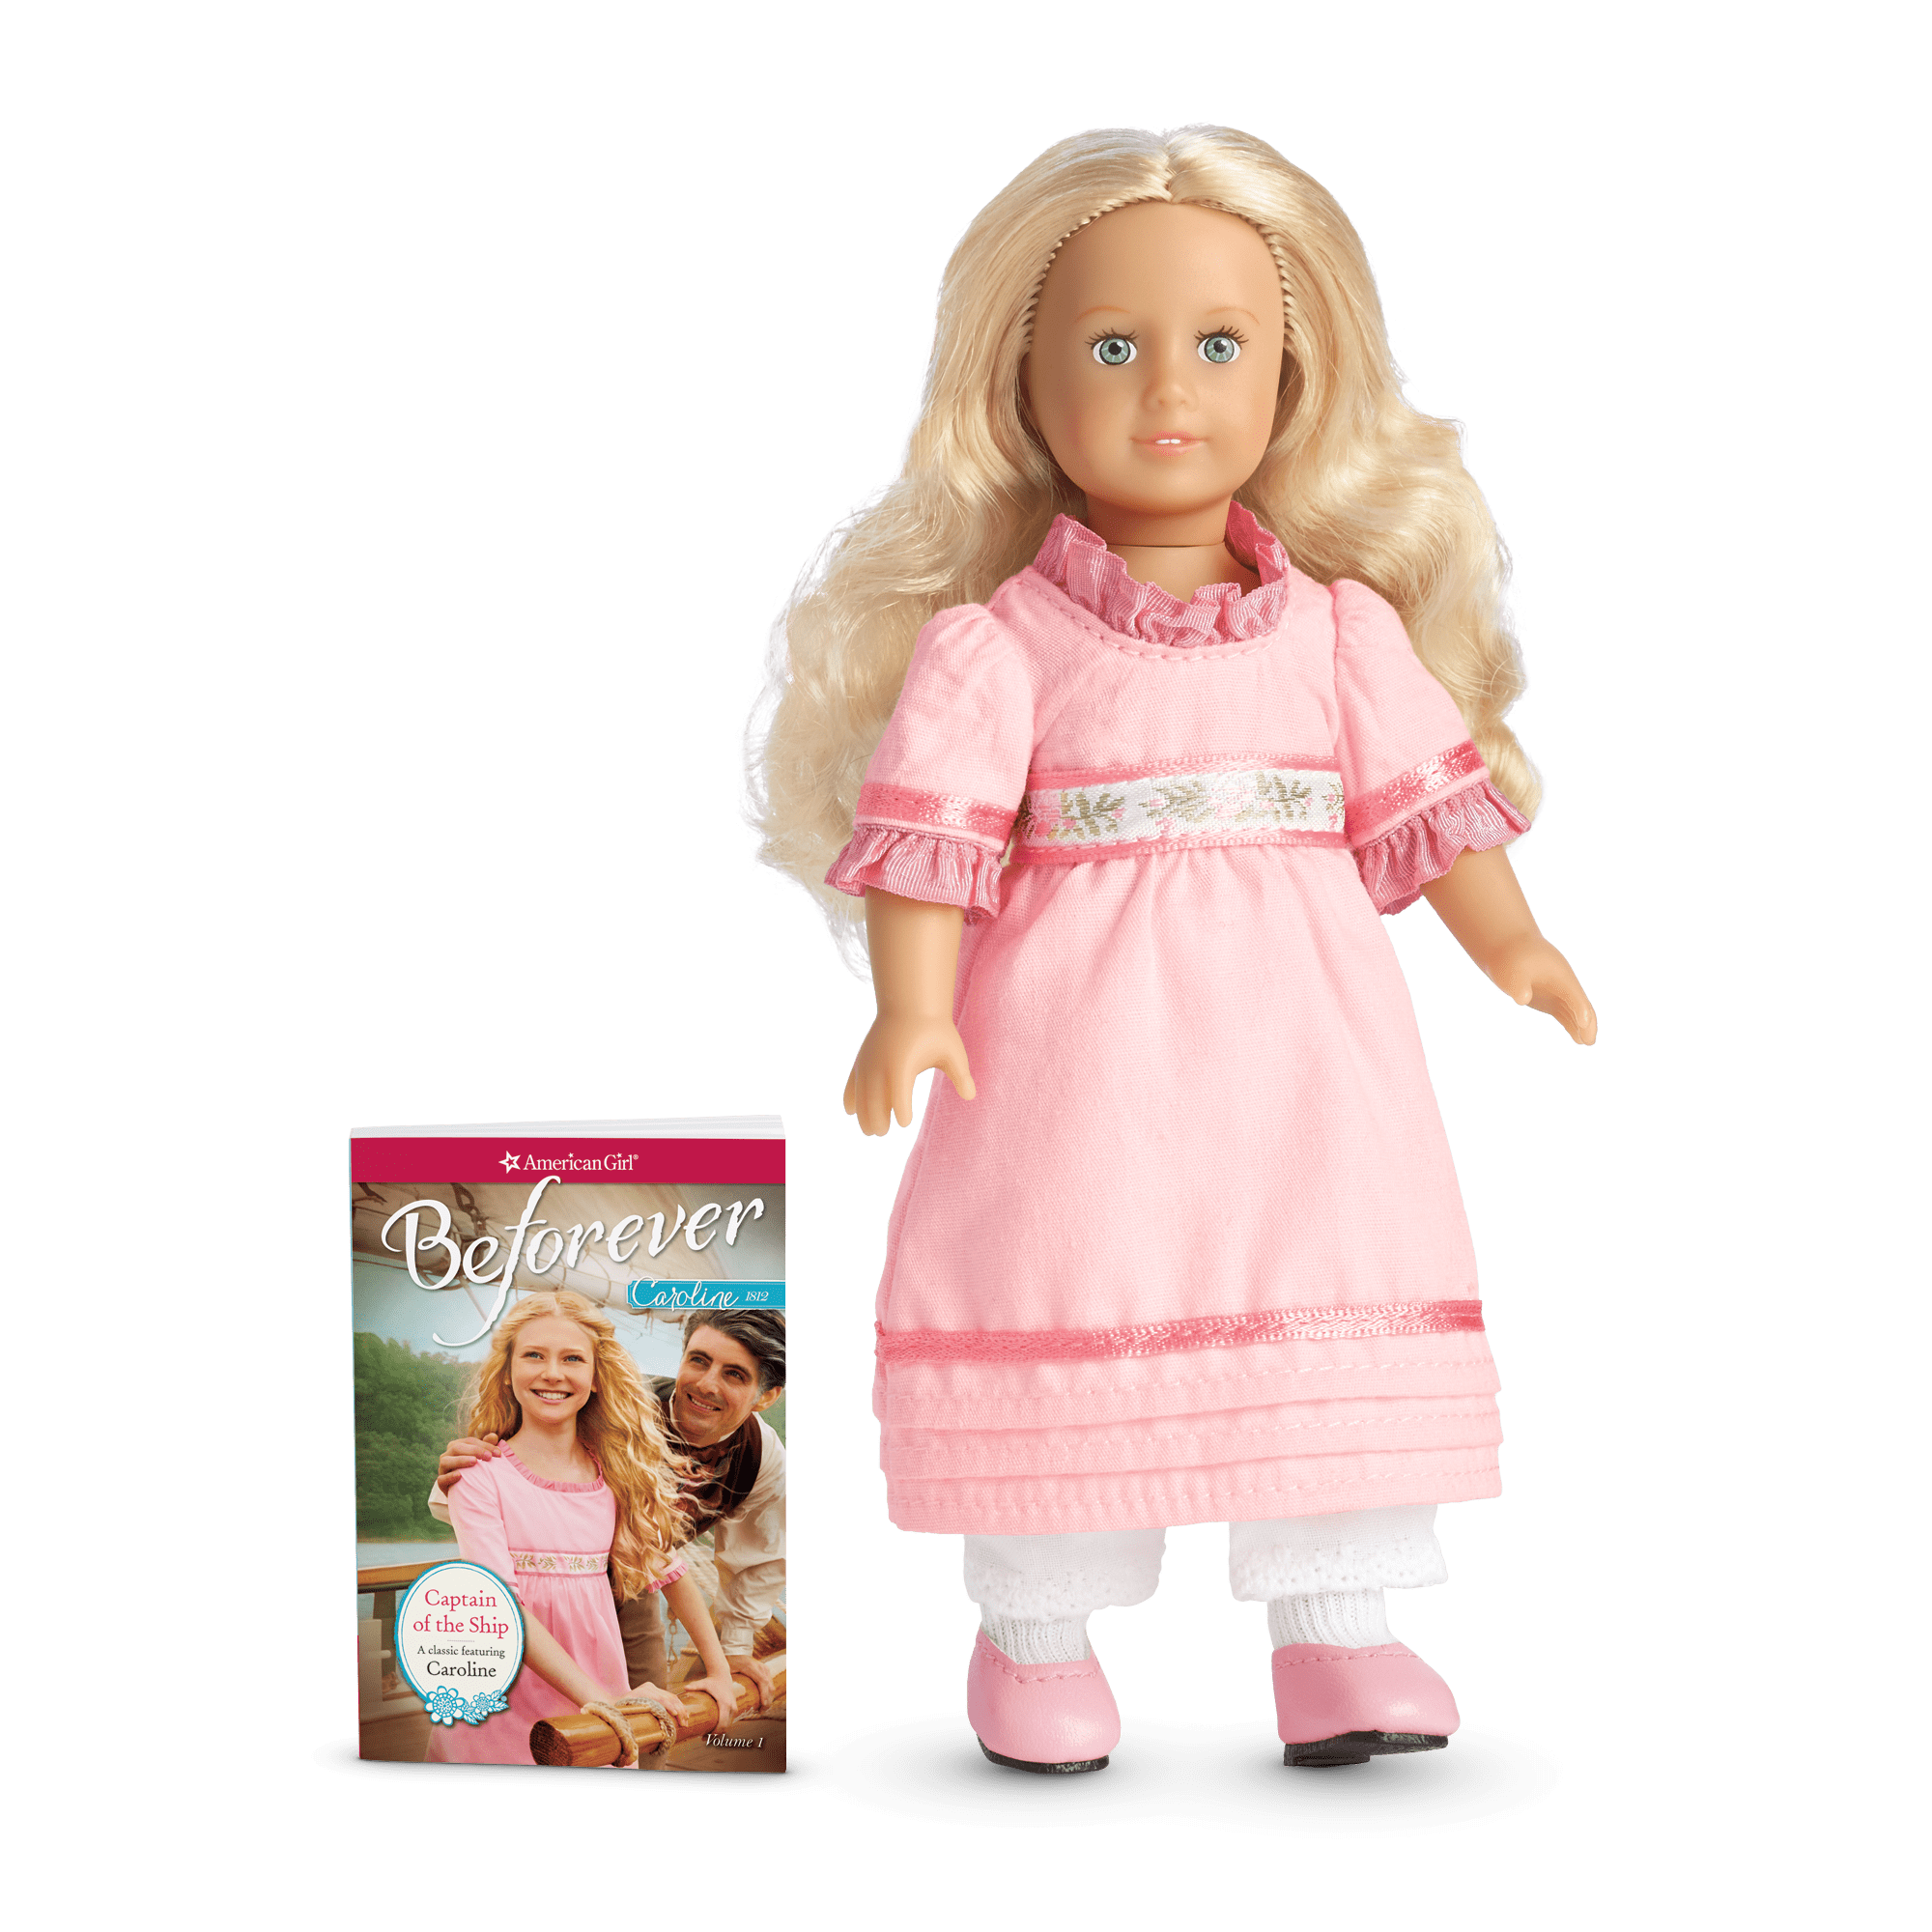 Caroline Abbott Mini Doll & Book